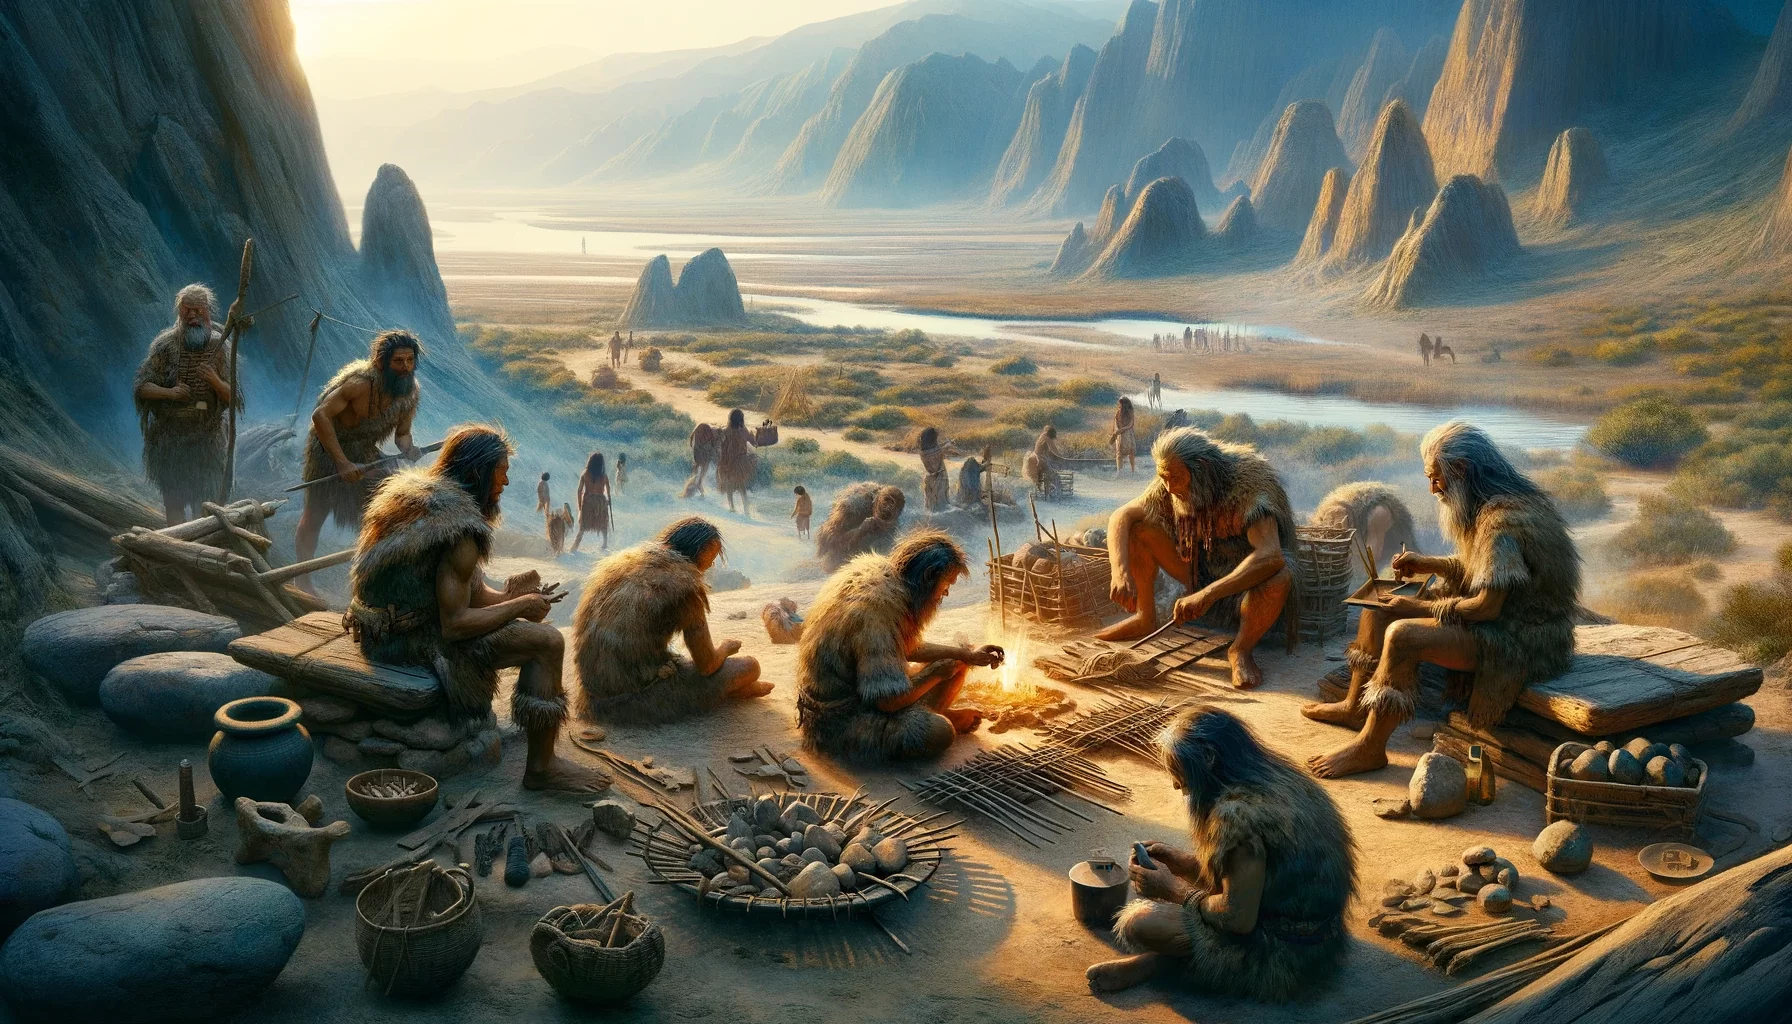 Otkriće napredne drevne kulture u Istočnoj Aziji staroj 45 000 godina